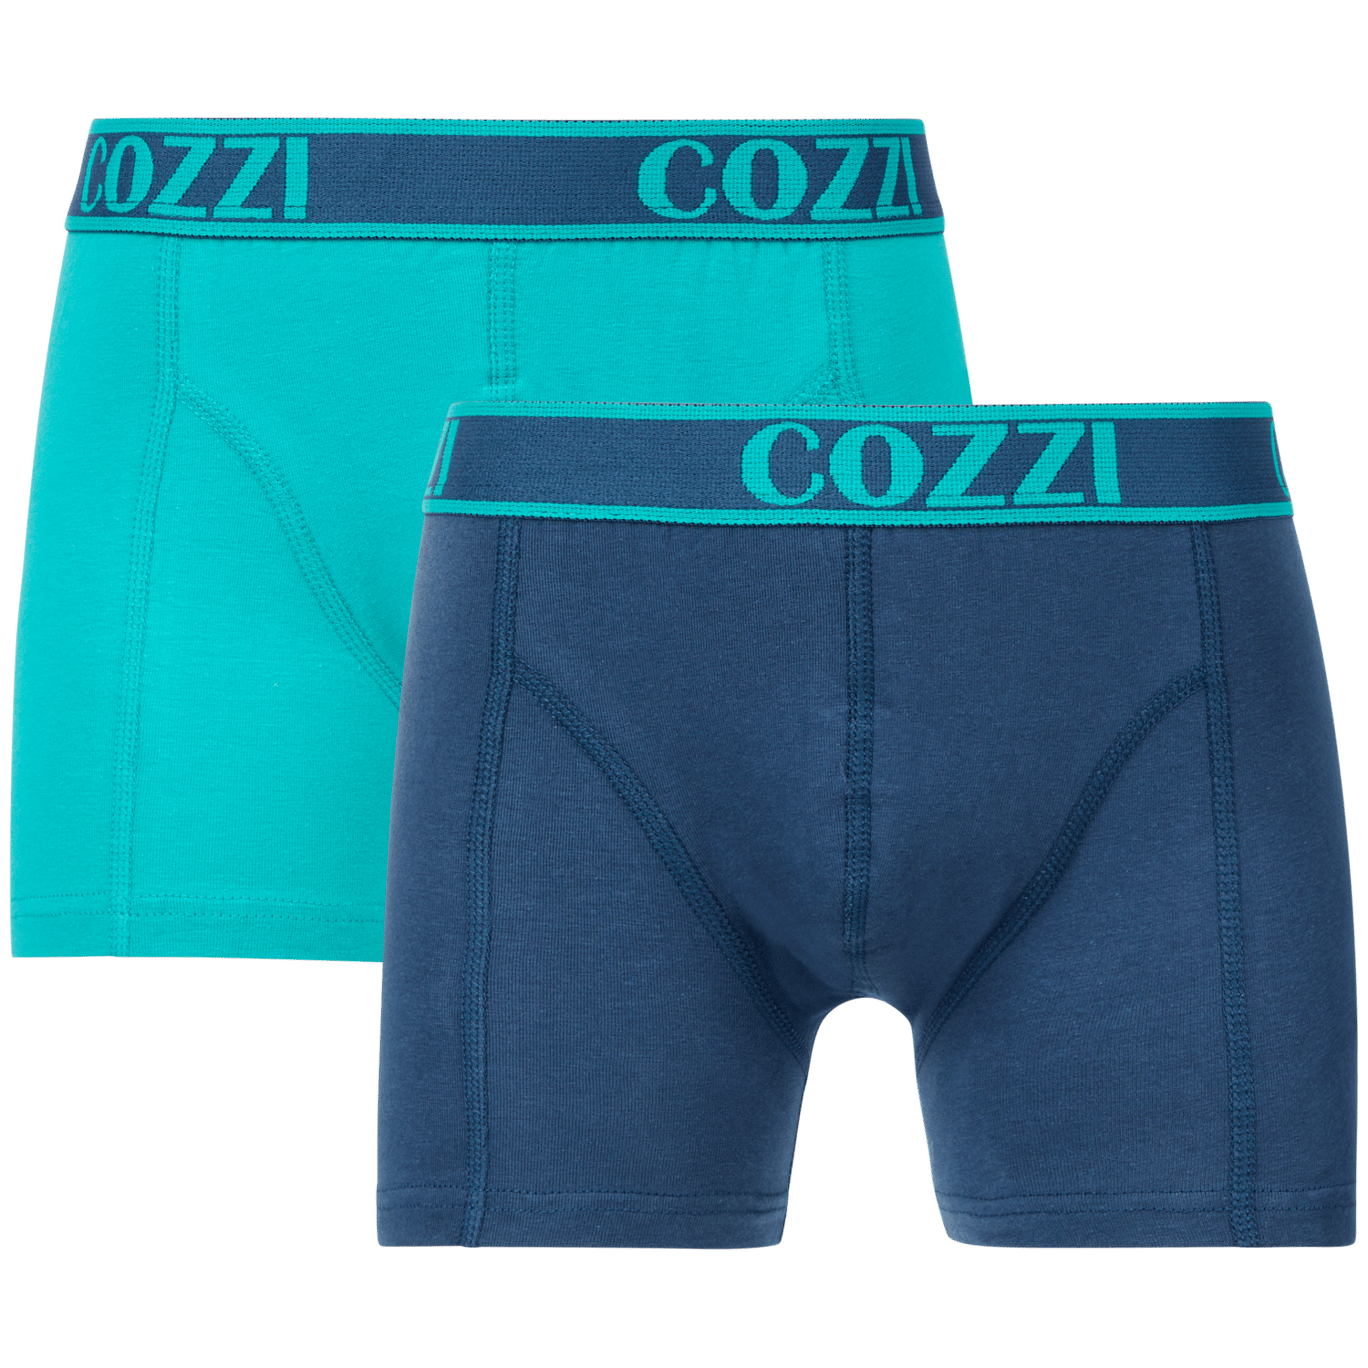 Cozzi Kinder-Boxershorts